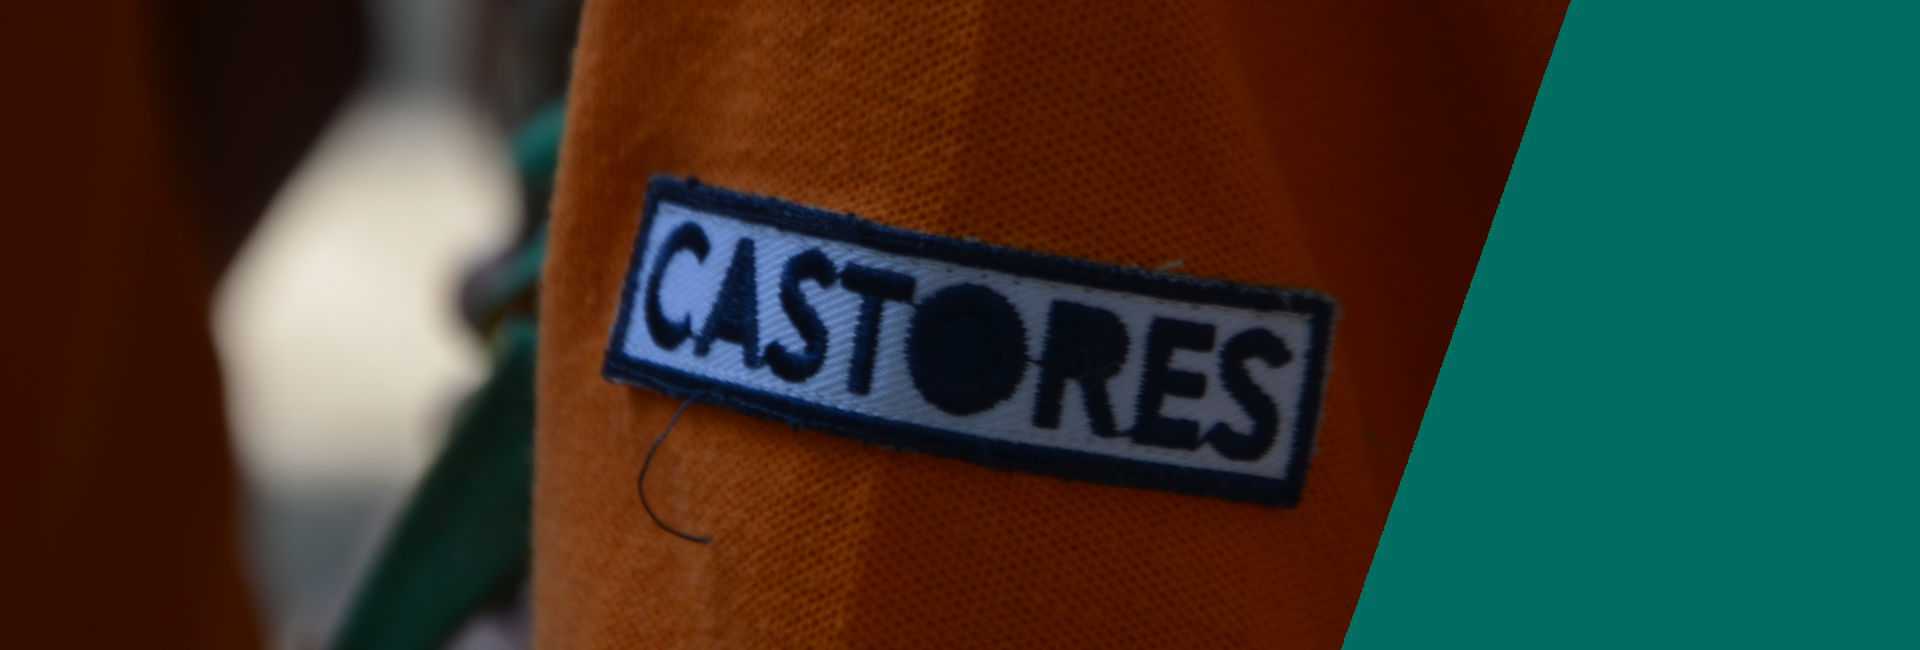 banner_uniforme_castores